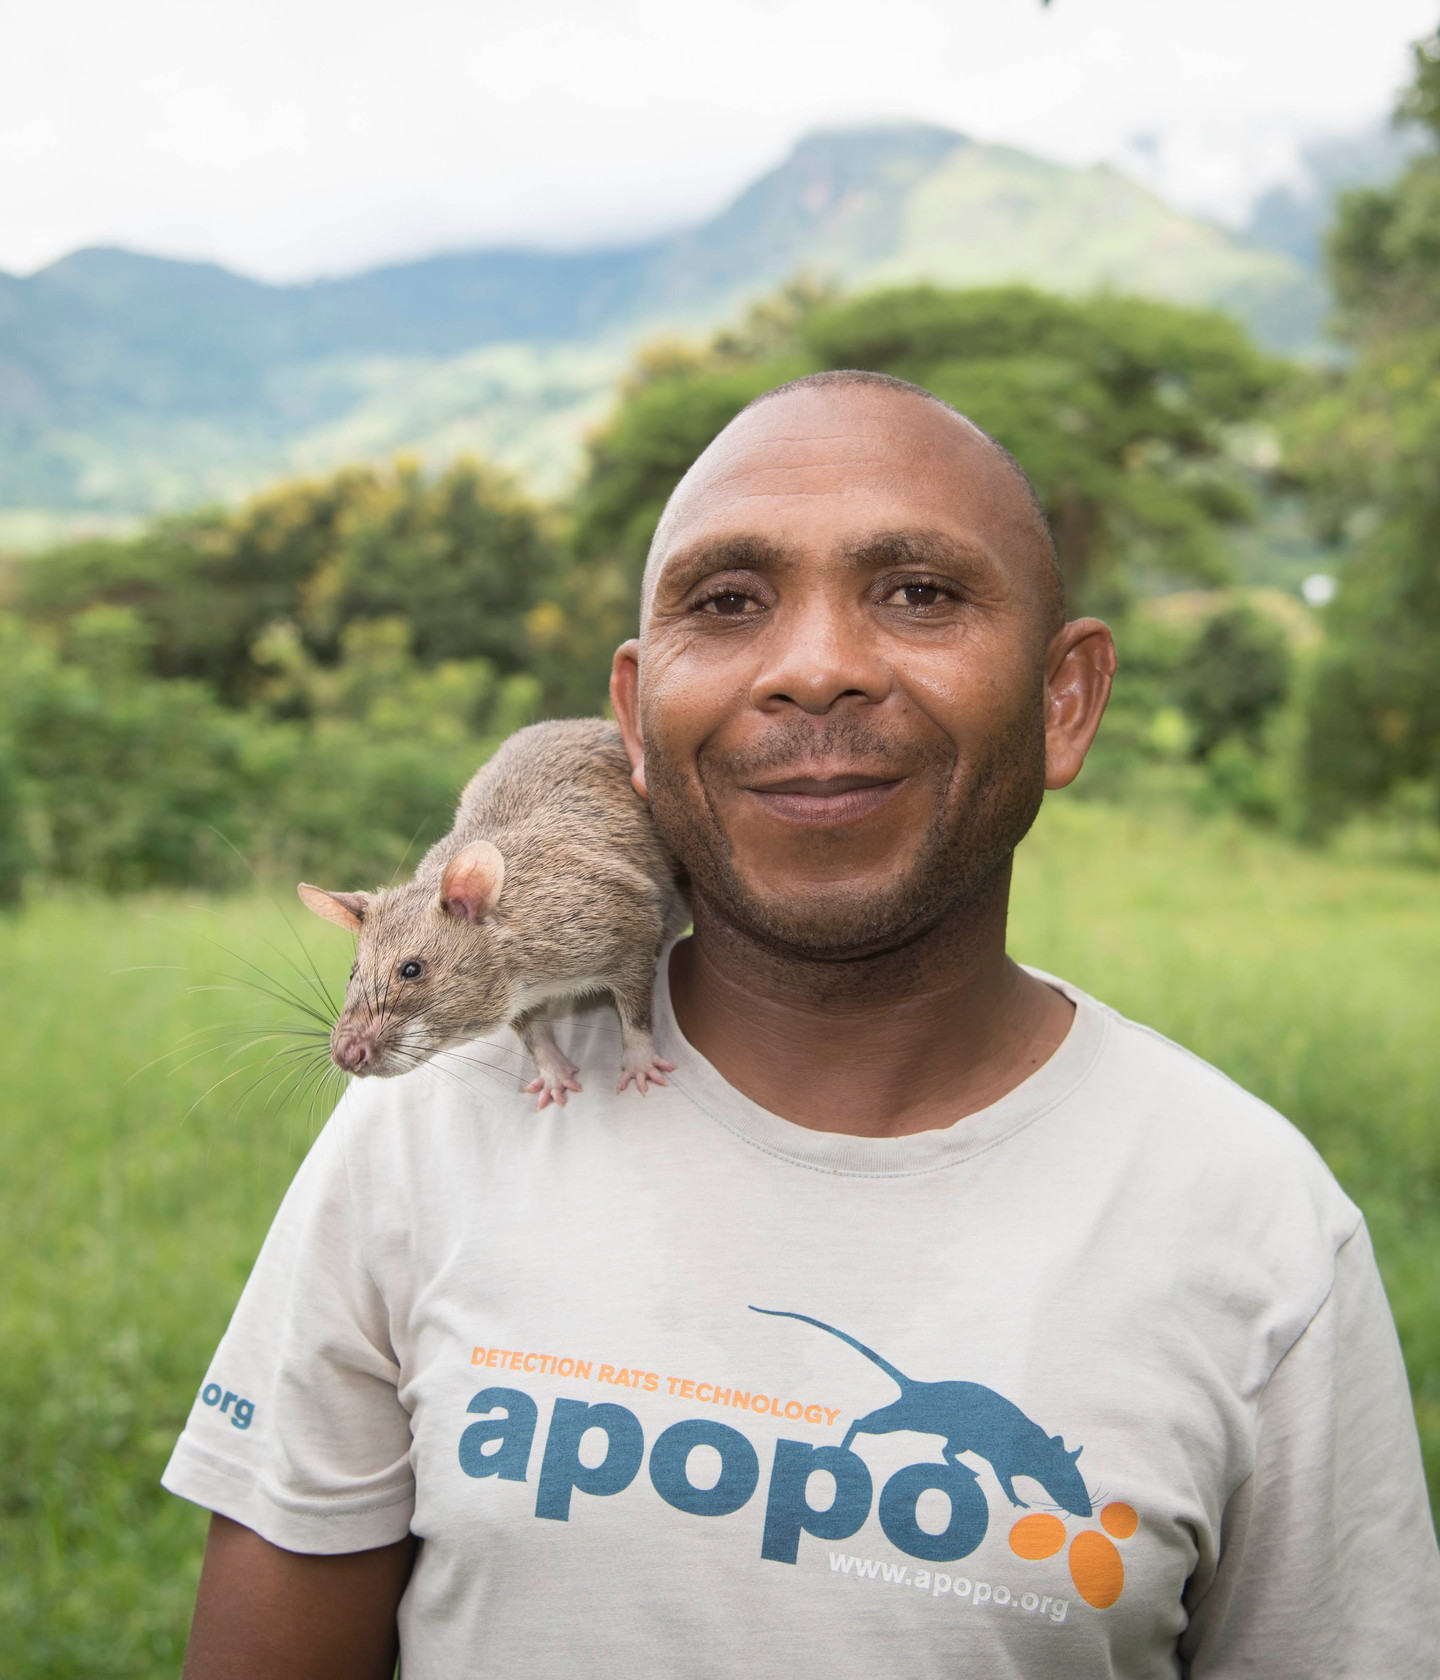 Shuri se graduó recientemente en la APOPO con honores, capacitándola en detección de minas terrestres. Con un destello de sus bigotes, Shuri ayudará a olfatear las minas terrestres en Angola, uno de los lugares más afectados por las minas en el mundo.